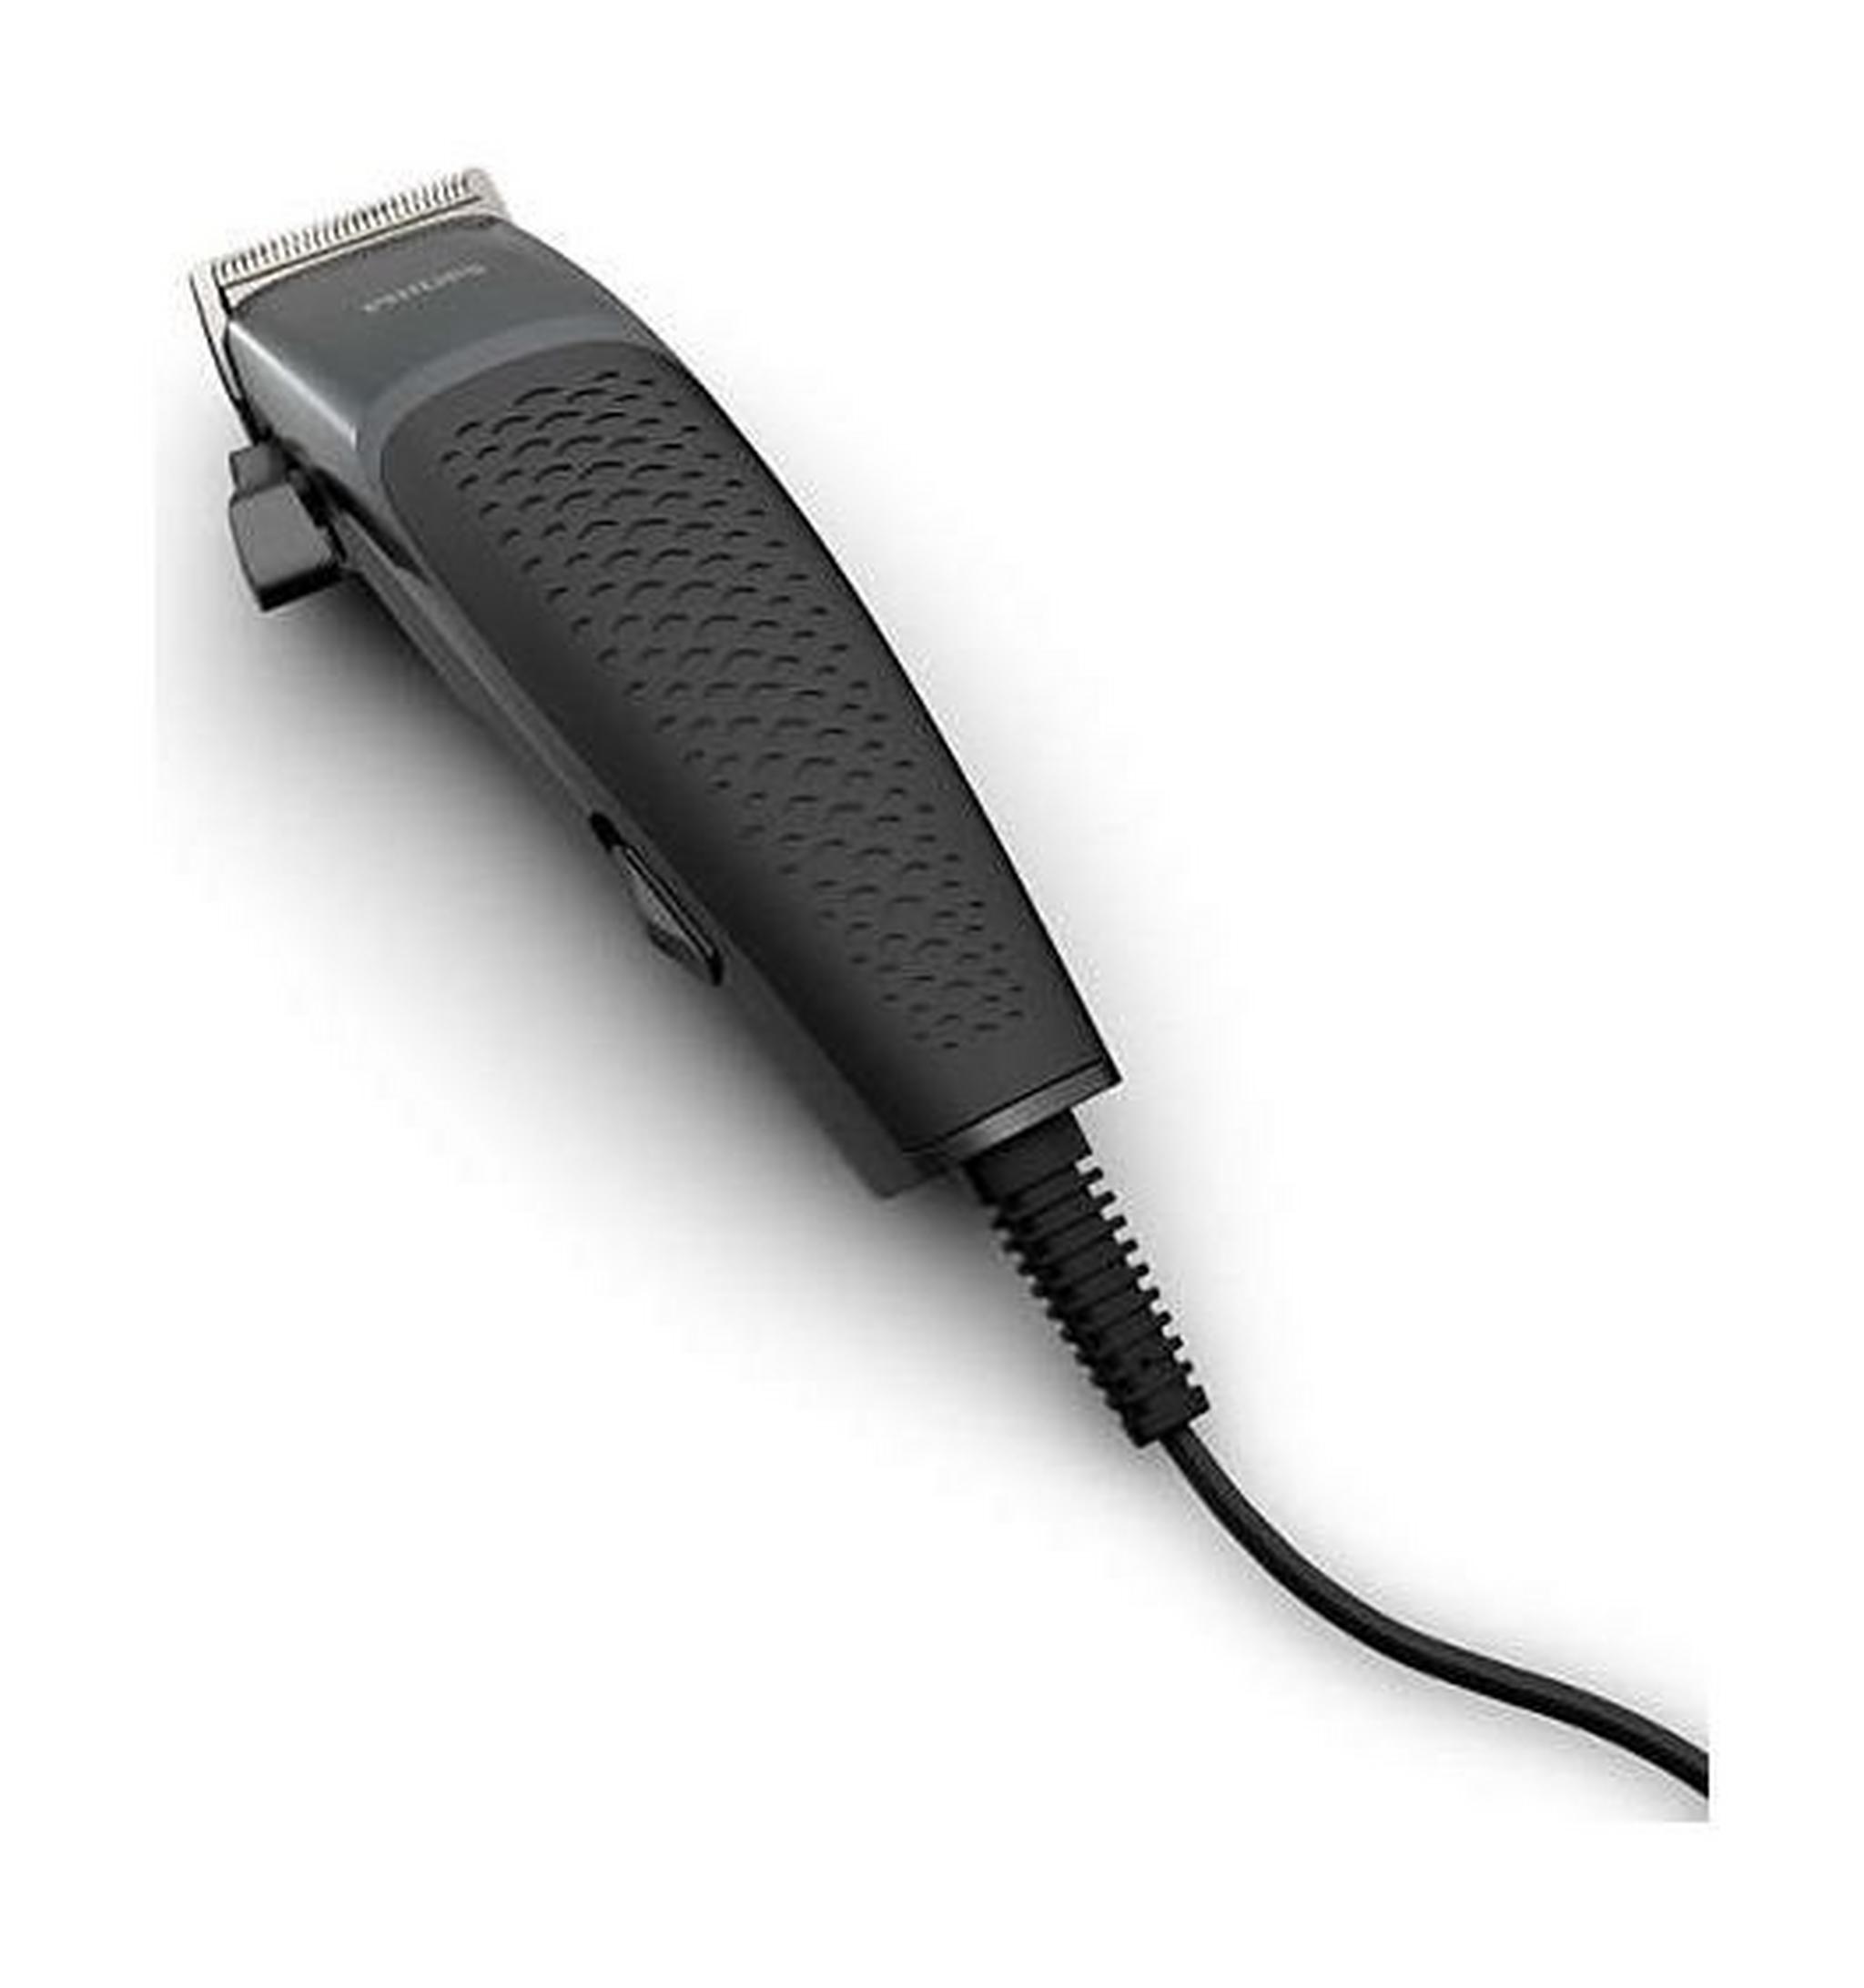 ماكينة قص الشعر سيريز 3000 من فيليبس، HC3100/13 - أسود